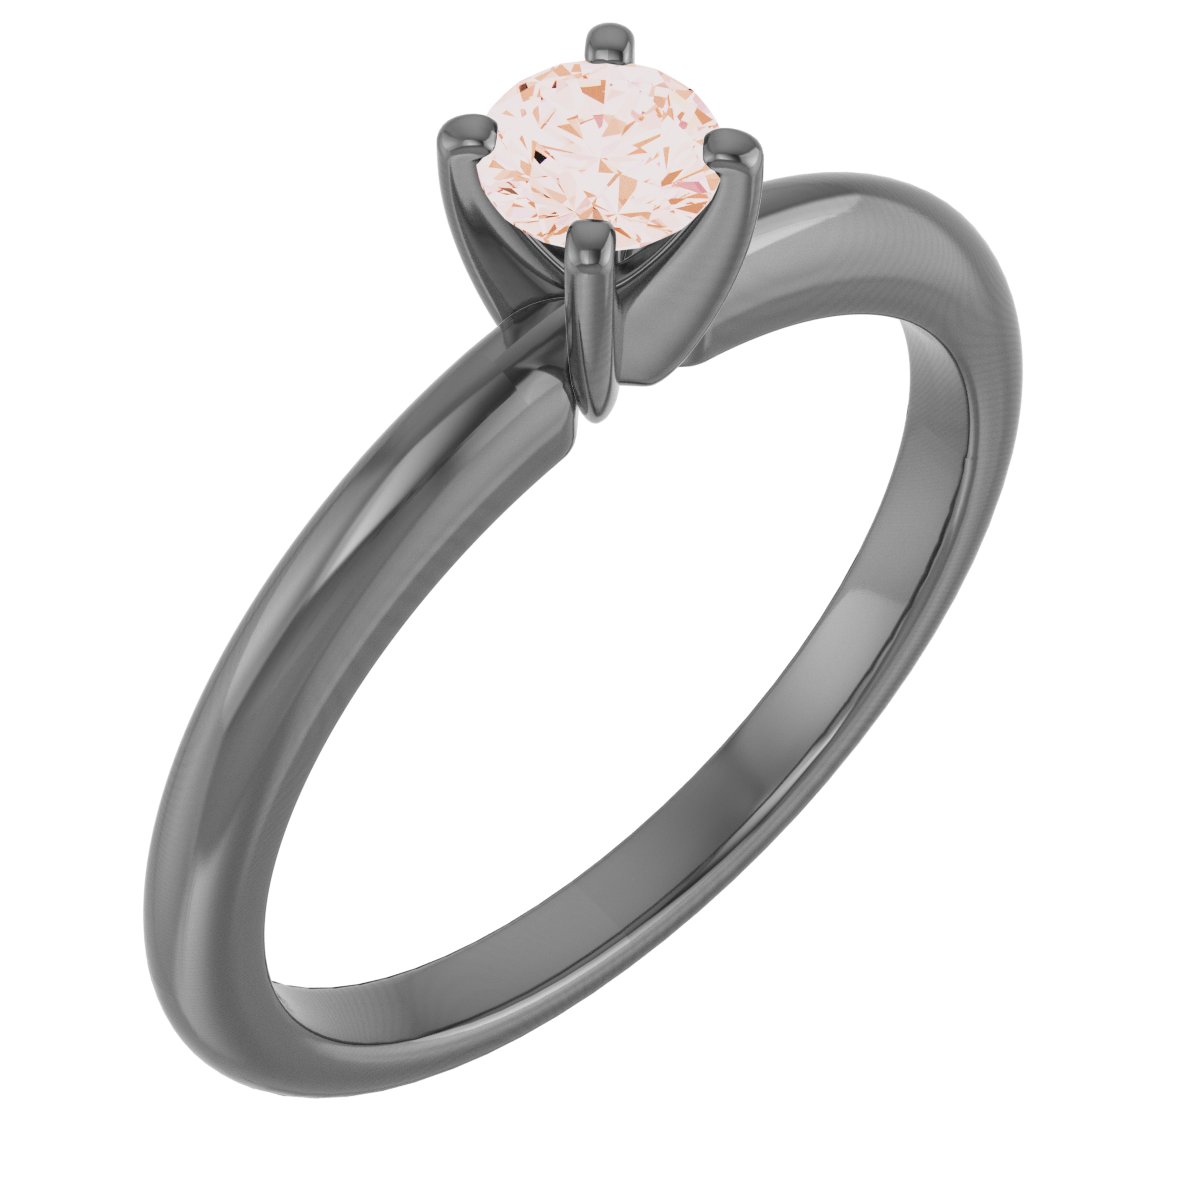 14K Rose 4 mm Round Forever One Moissanite Engagement Ring Ref 13809223